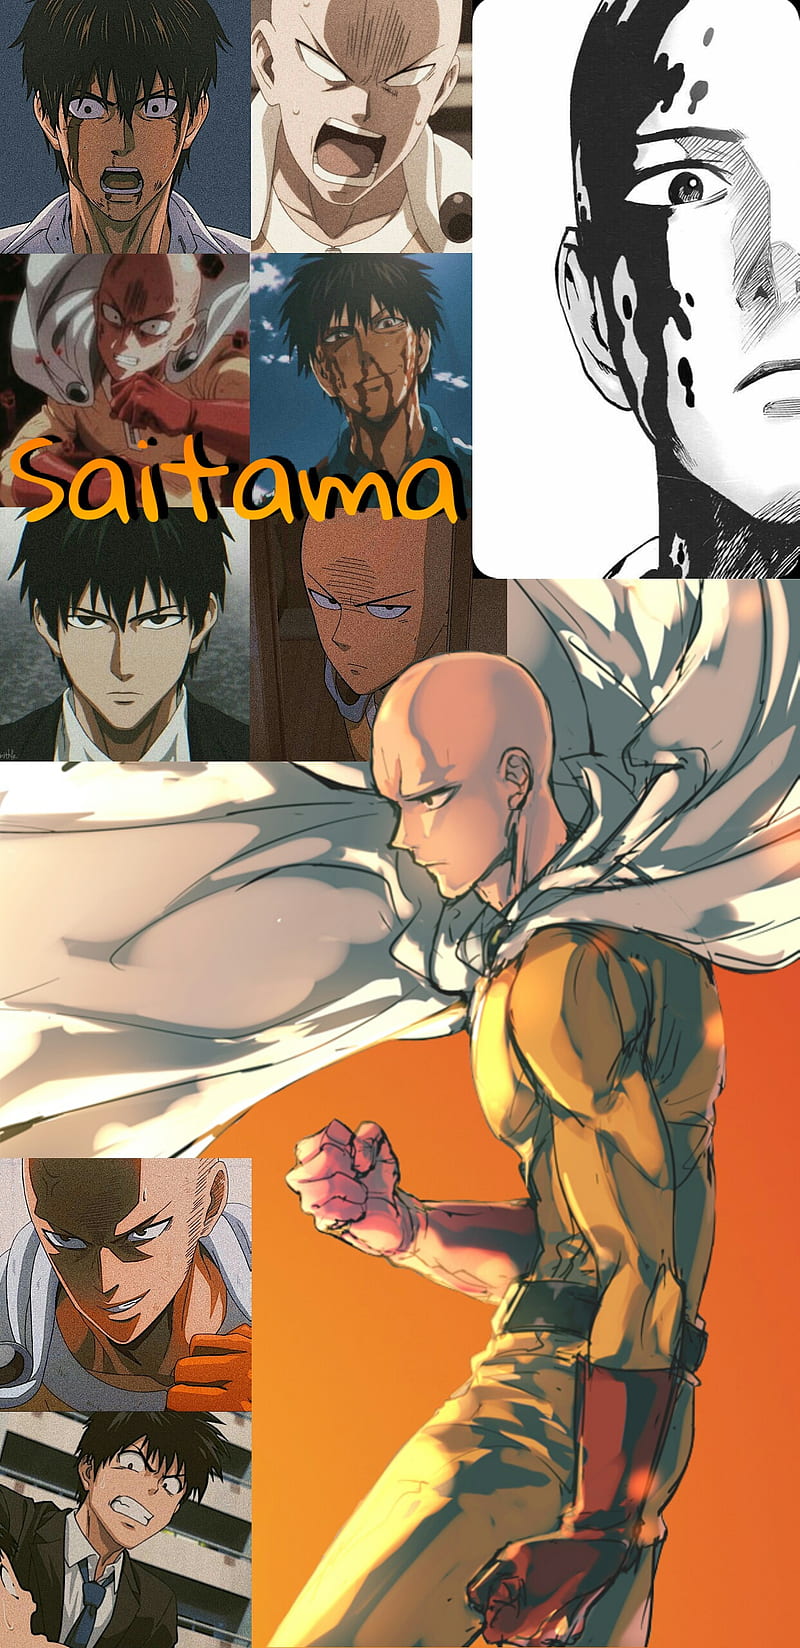 Saitama, anime, broken, glass, hero, man, one, phone, punch